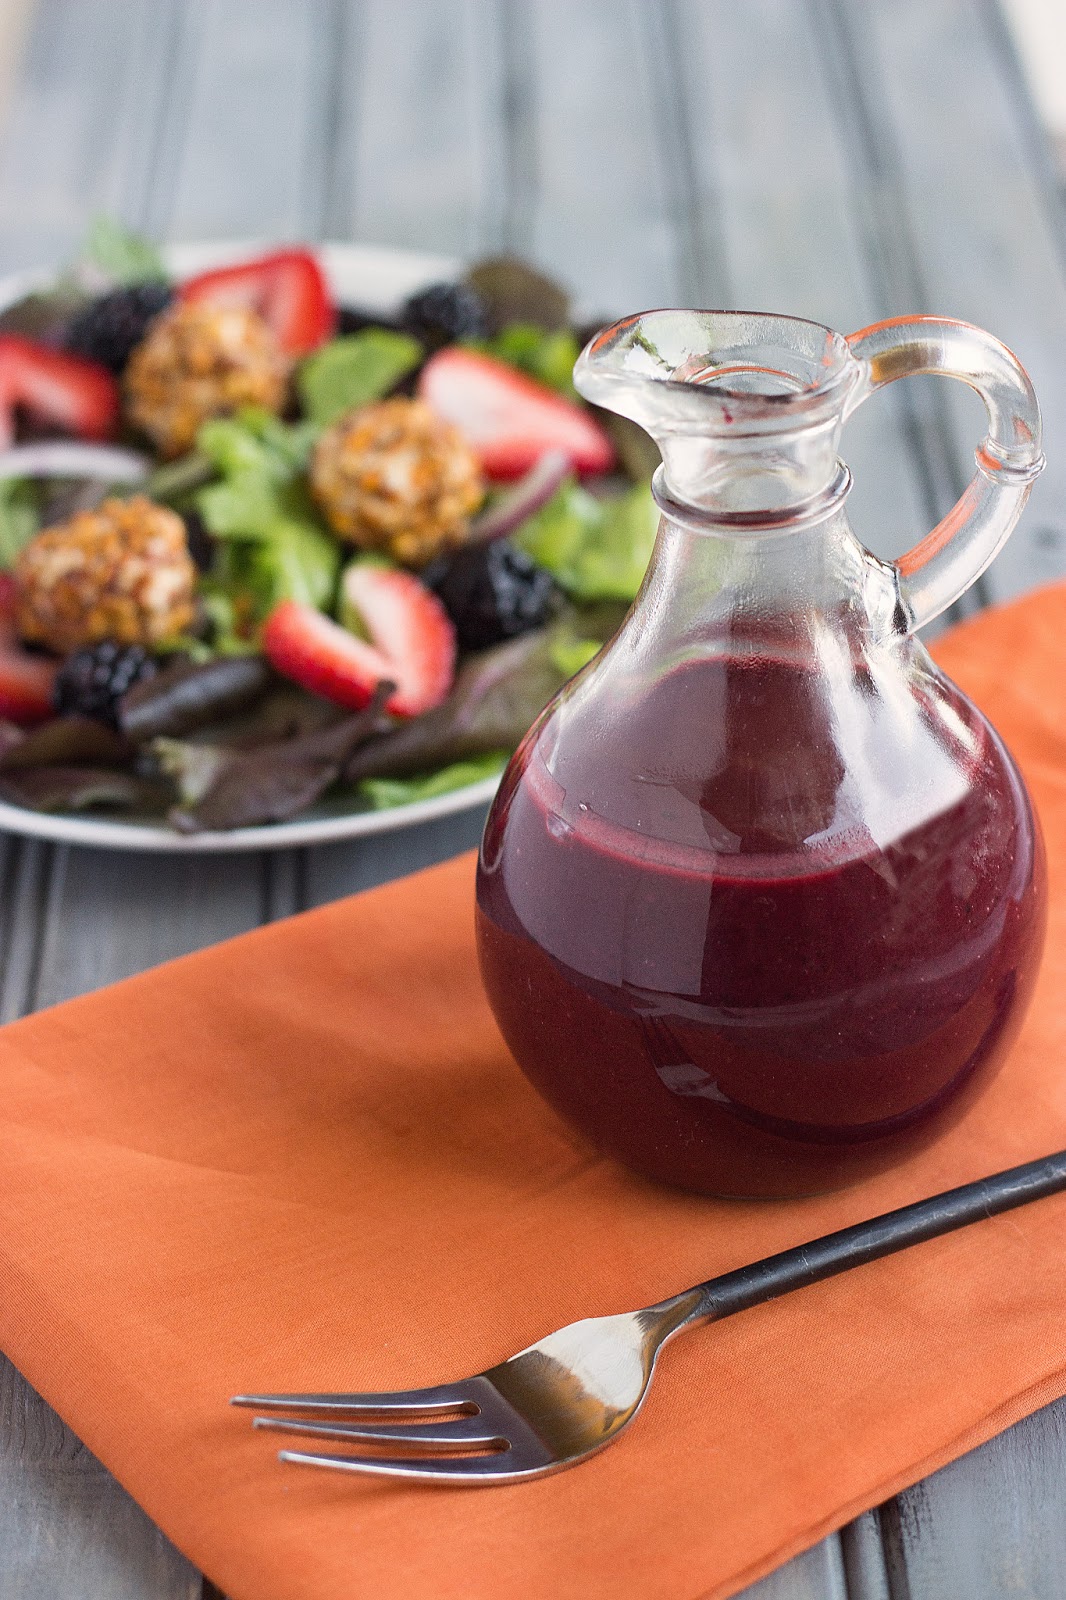 Summer Salad-Blackberry Vinaigrette | Cooking on the Front Burner